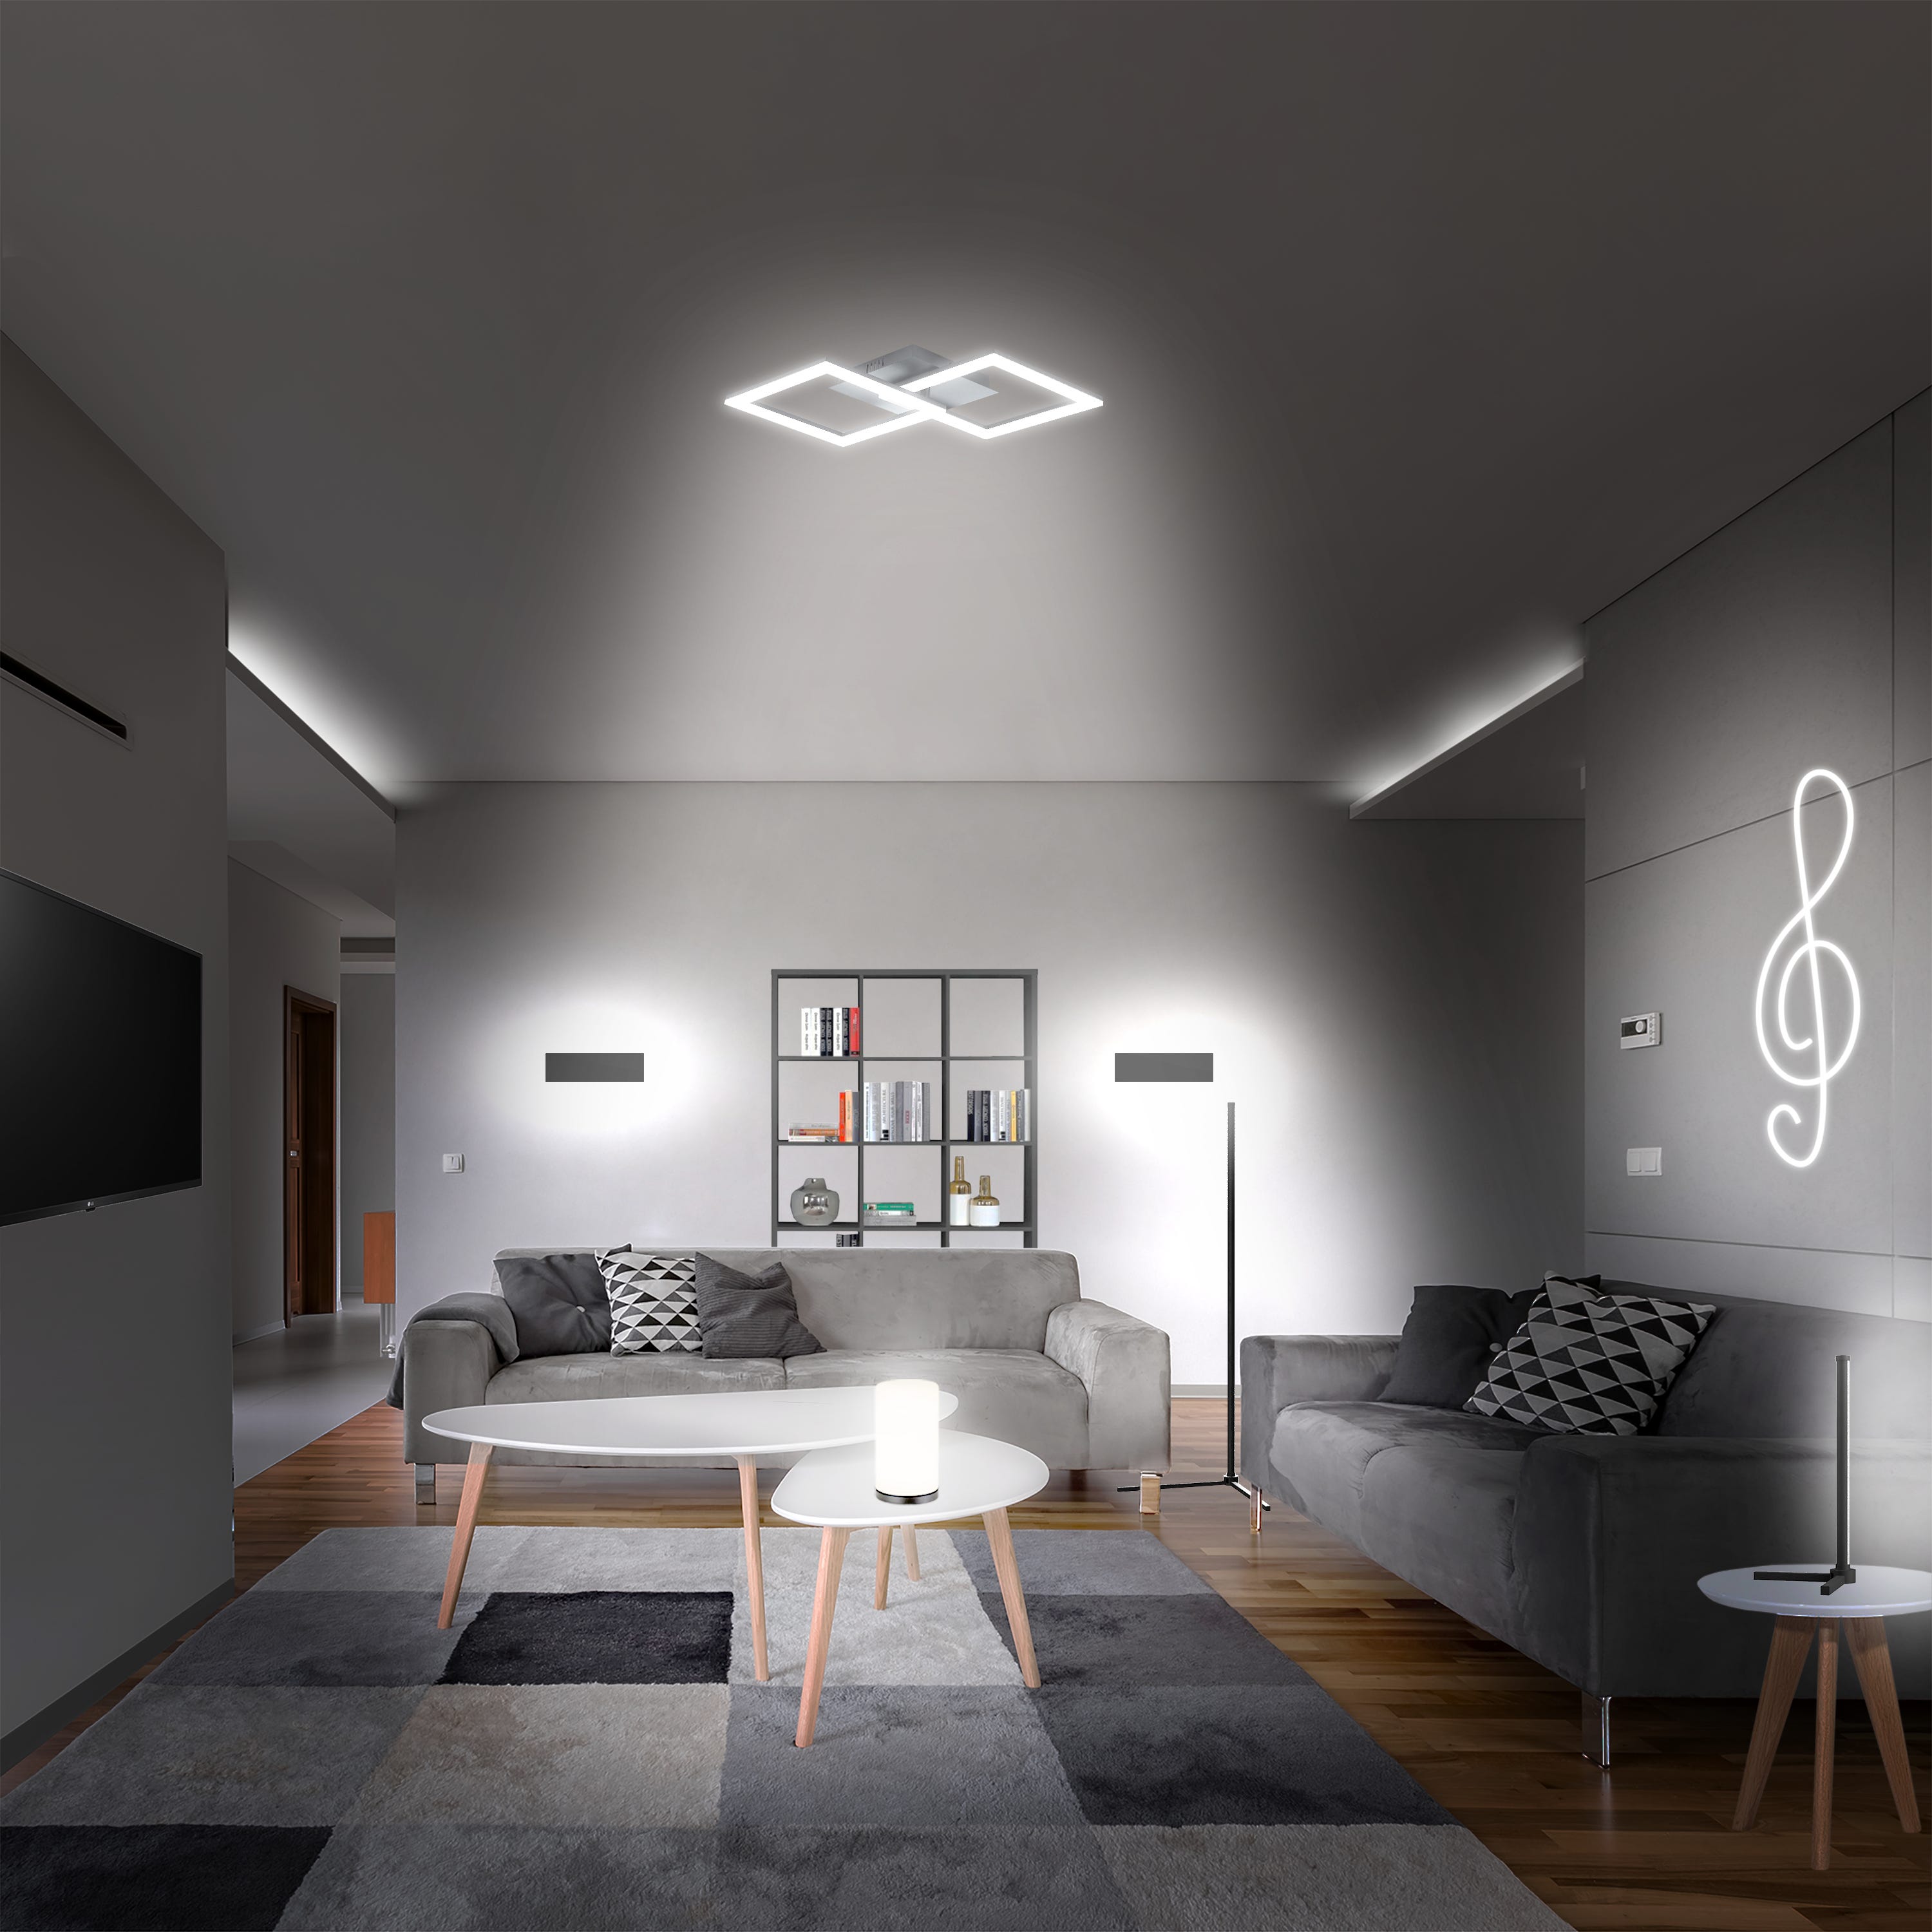 Faretto da soffitto lampada da terra telecomando lampada da soggiorno  dimmerabile in un set di lampadine LED RGB